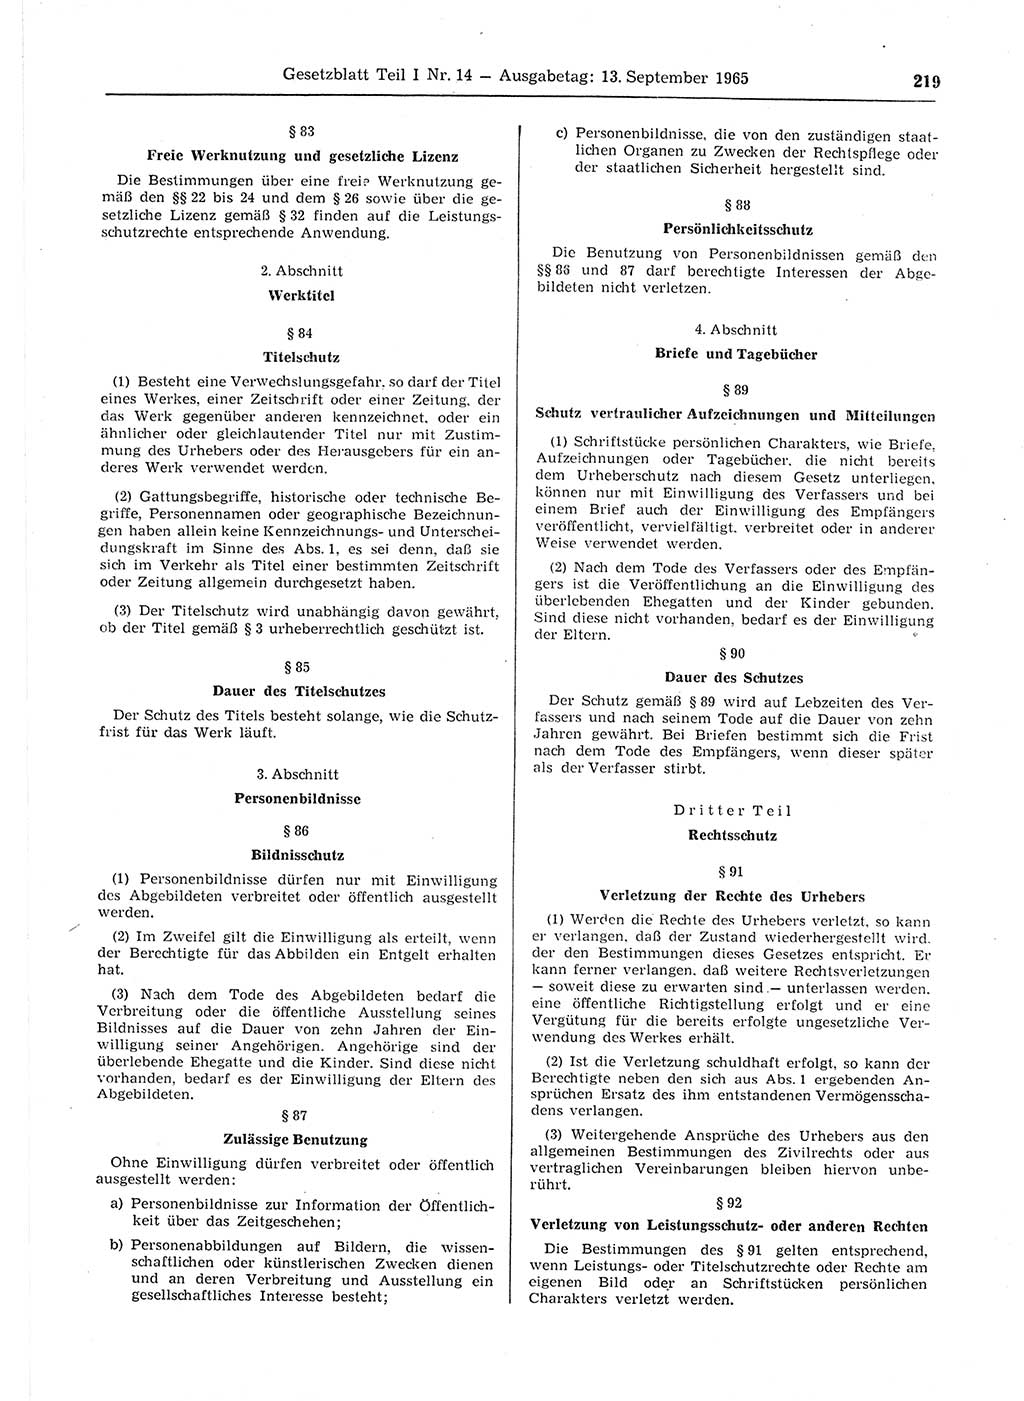 Gesetzblatt (GBl.) der Deutschen Demokratischen Republik (DDR) Teil Ⅰ 1965, Seite 219 (GBl. DDR Ⅰ 1965, S. 219)